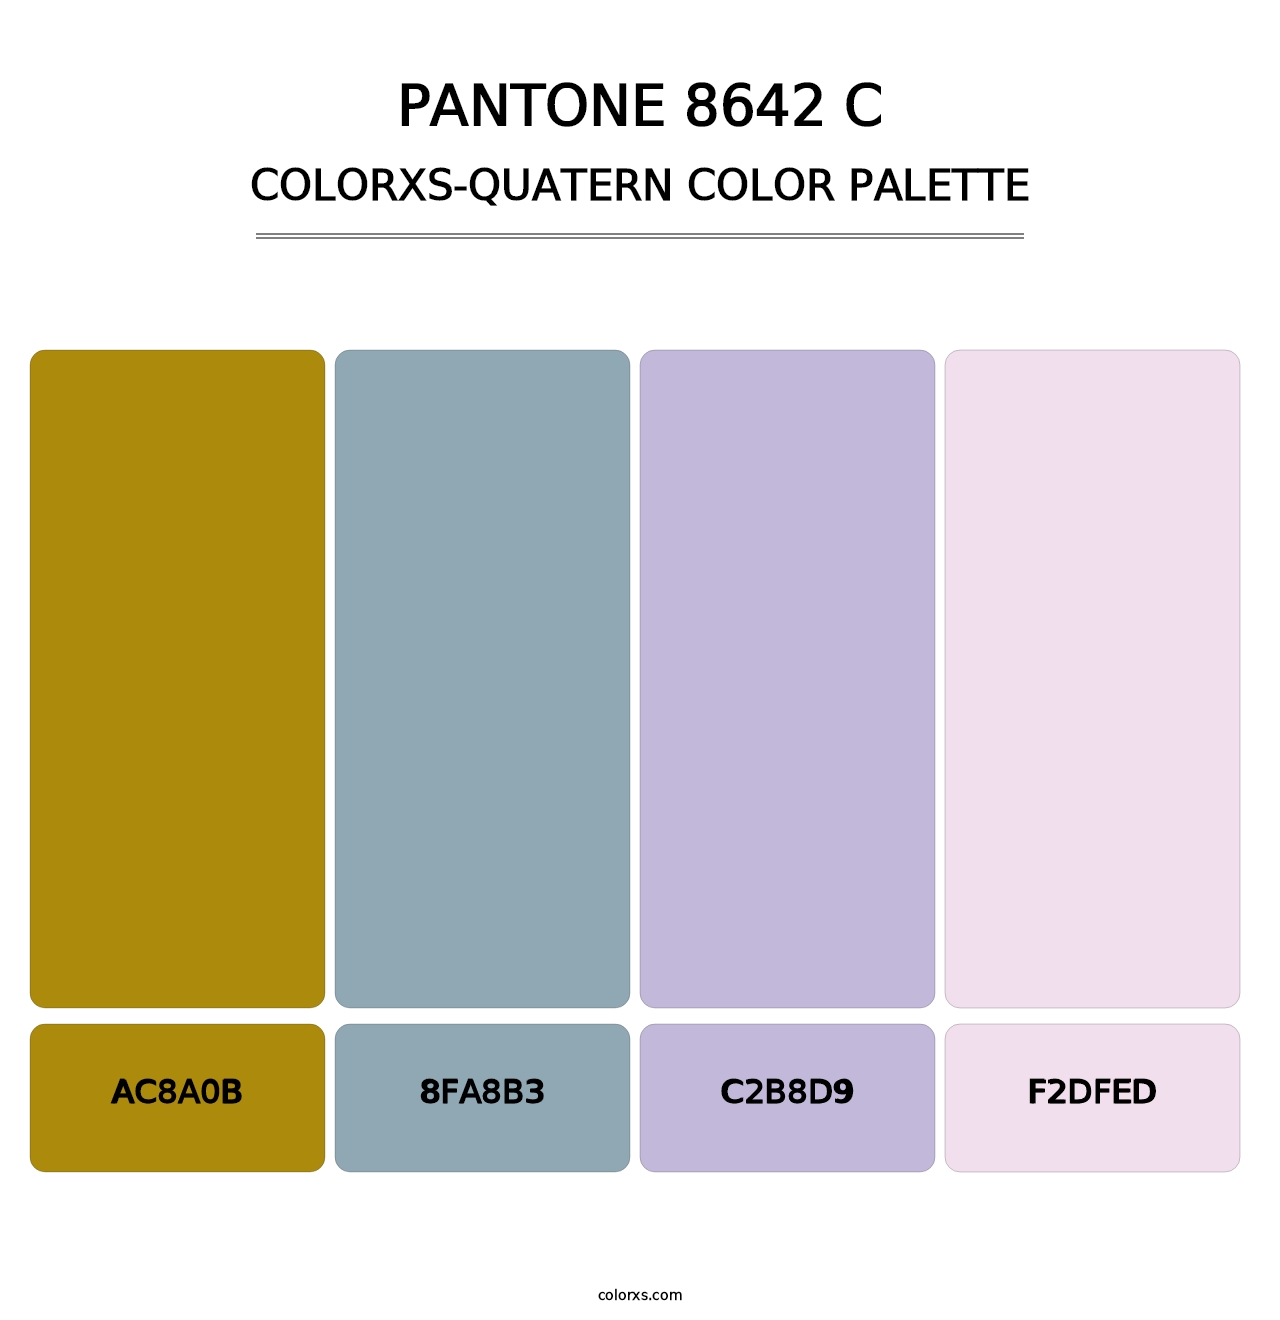 PANTONE 8642 C - Colorxs Quatern Palette